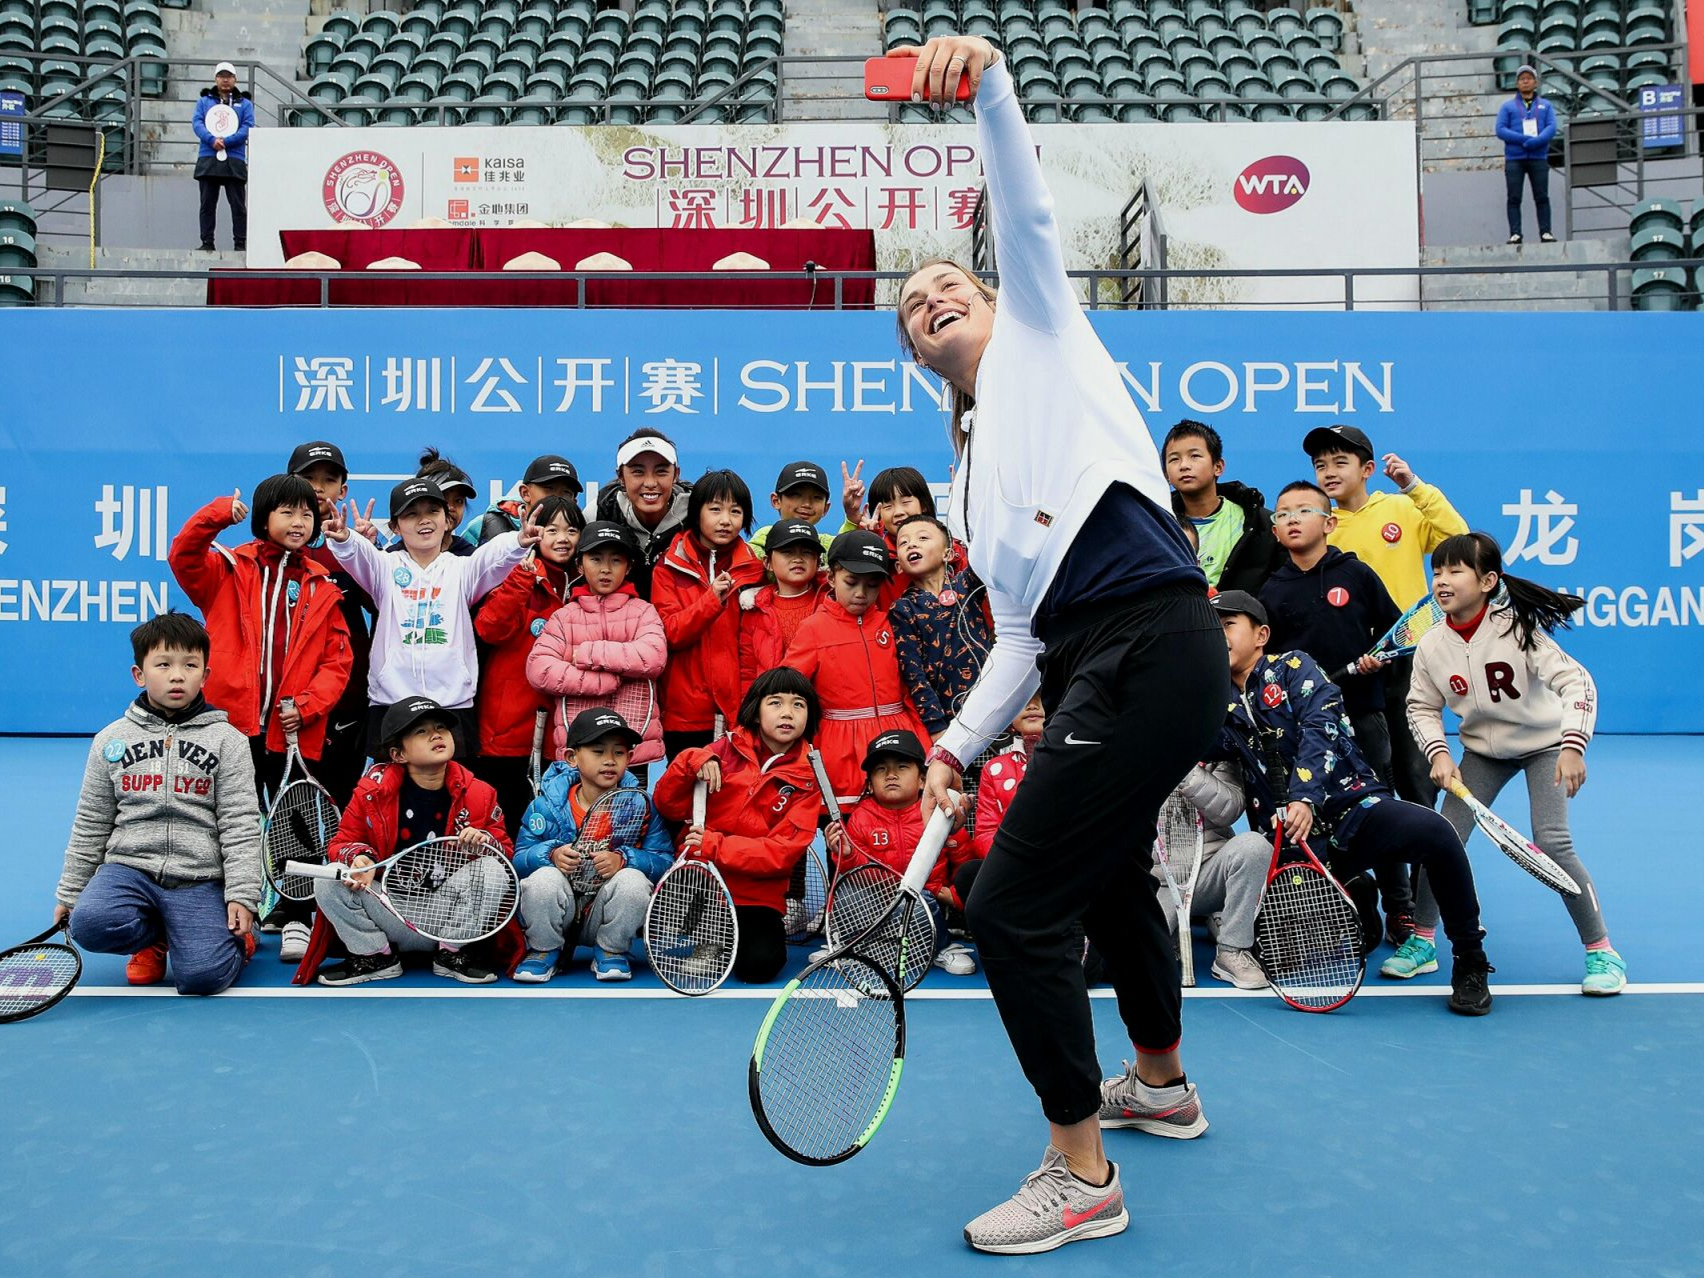 新闻日历 | 12月29日 4年前的今天 第七届WTA深圳公开赛挥拍